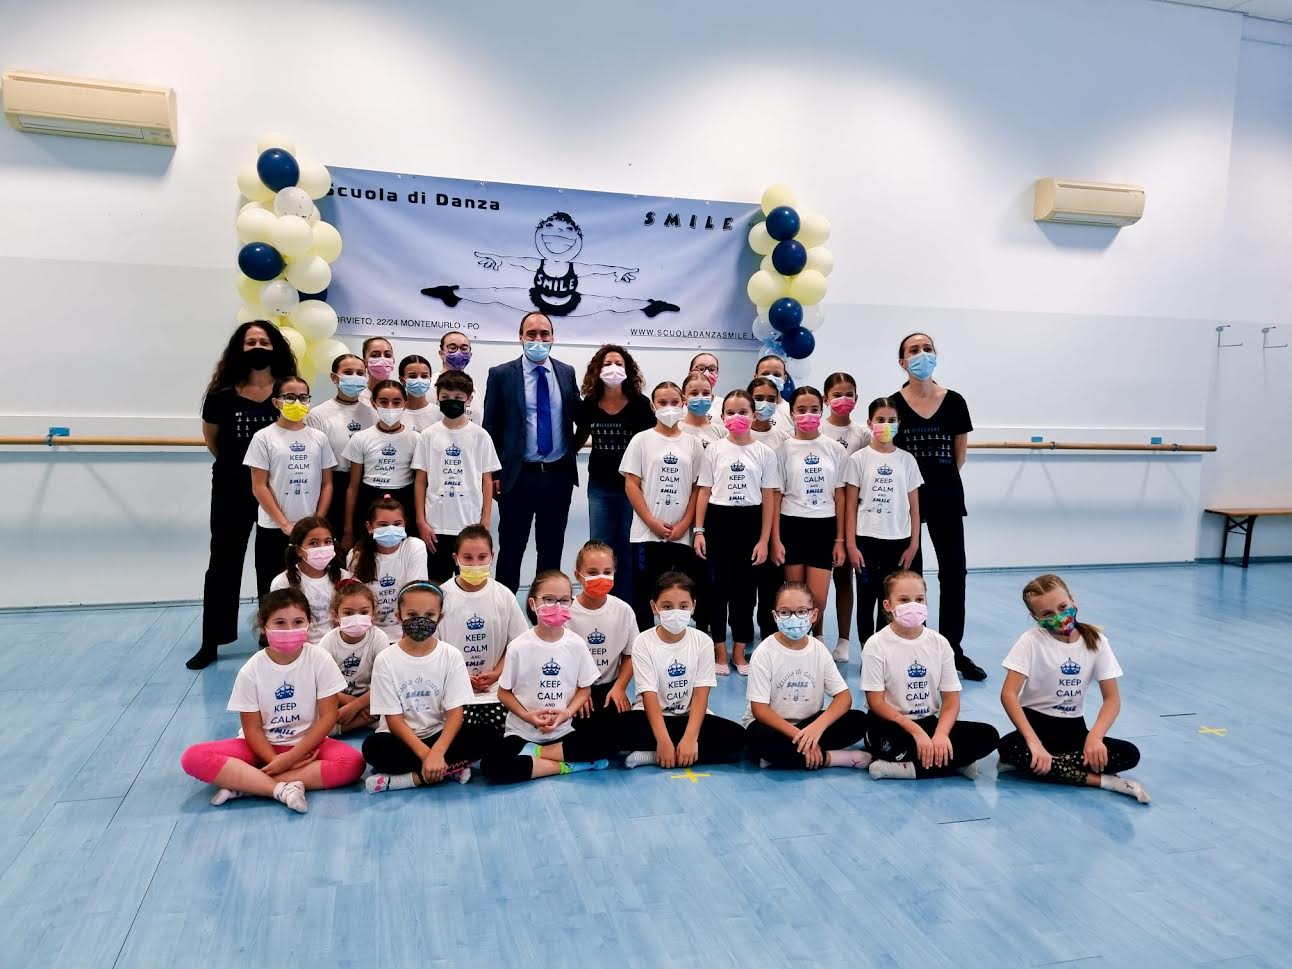 La scuola di danza Smile festeggia 20 anni di attività